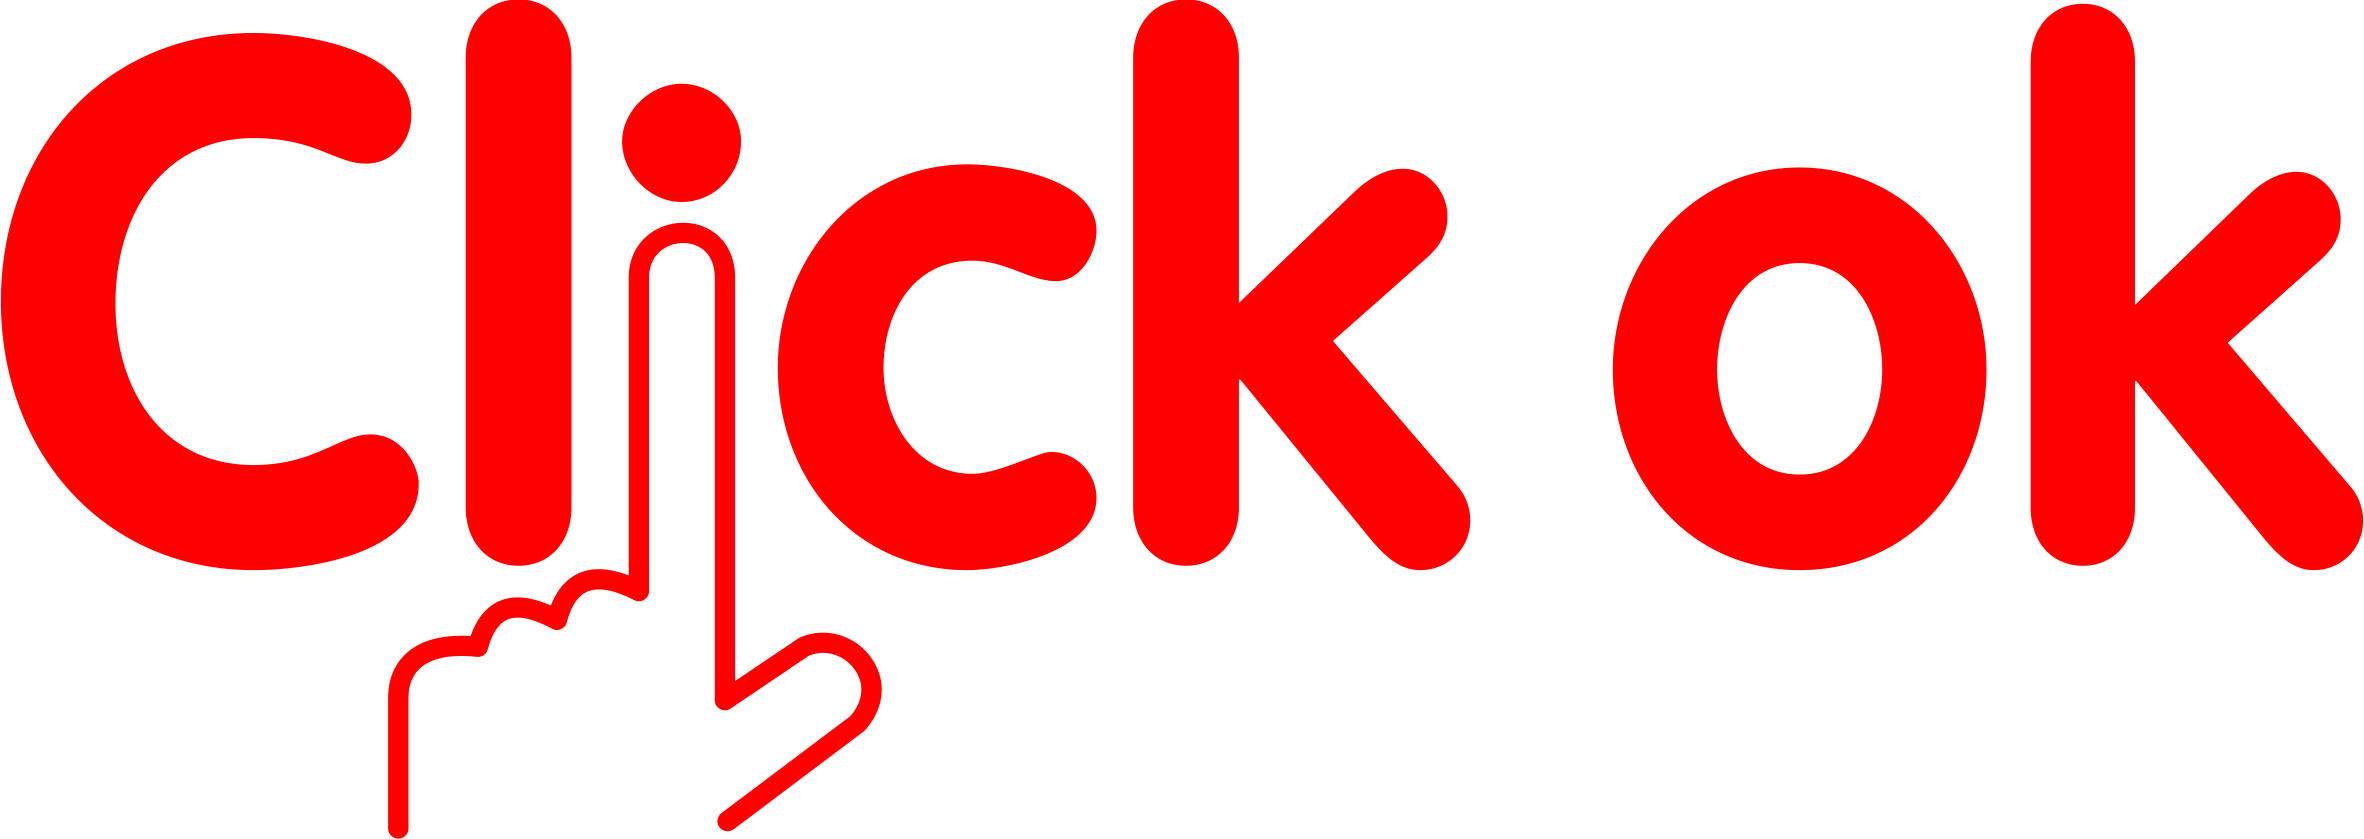 Click-ok Logo